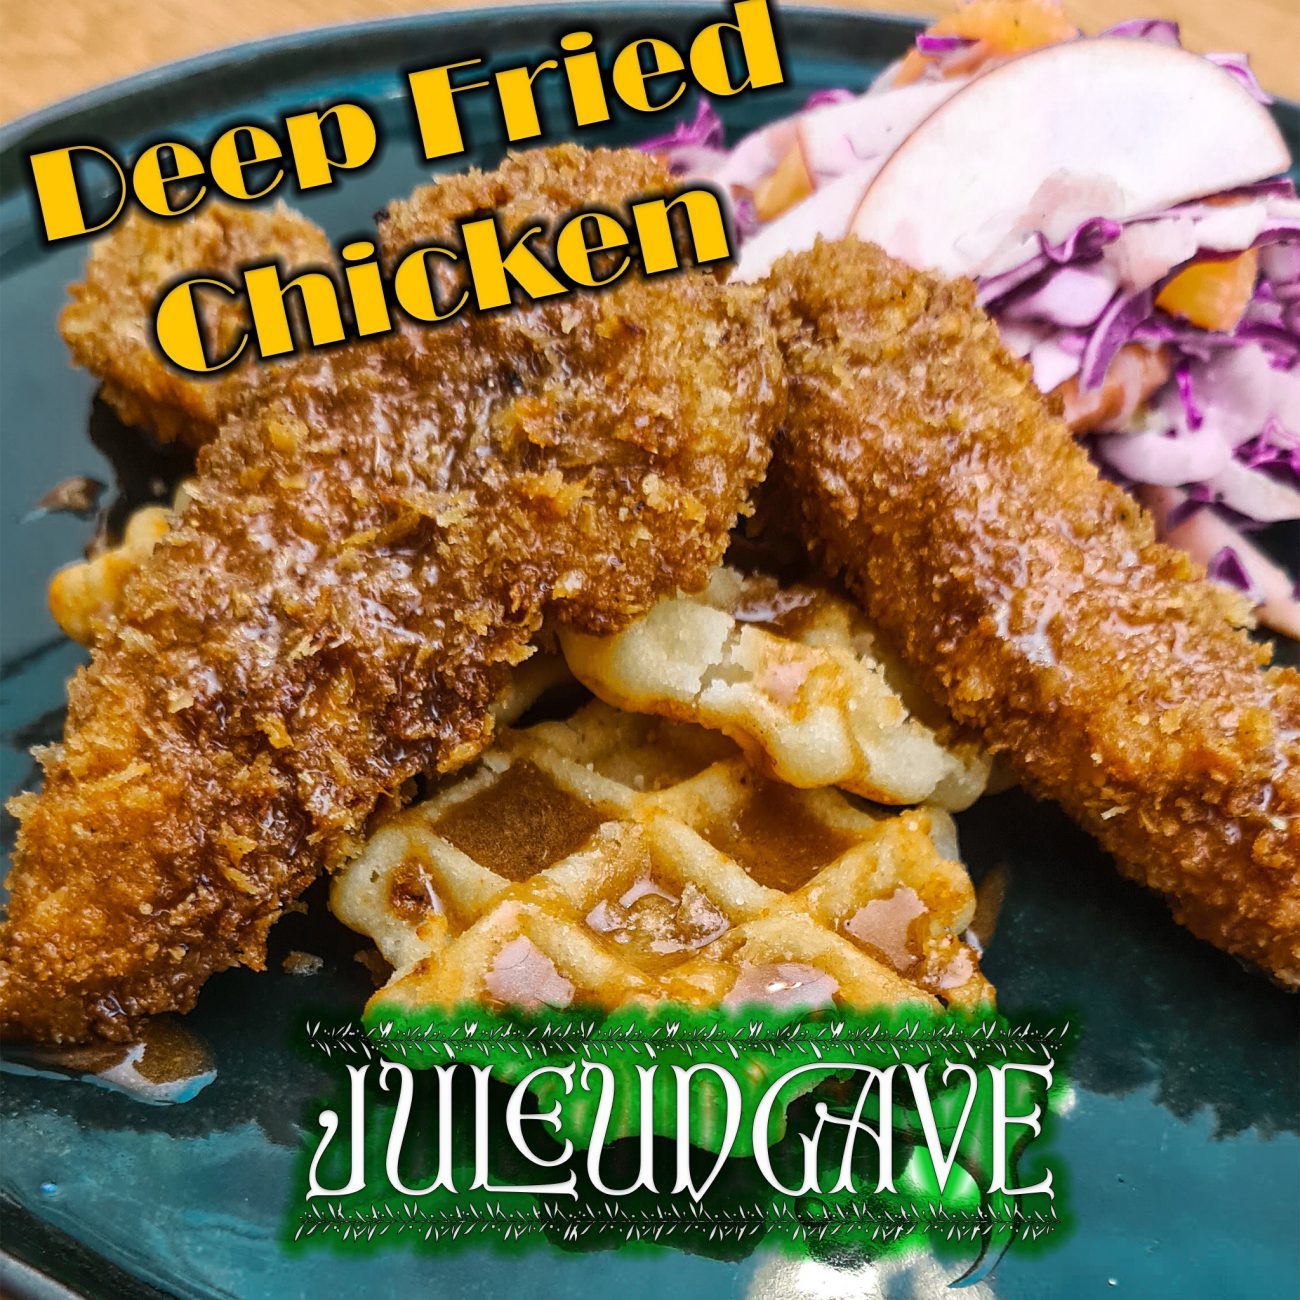 Deep Fried Chicken – Juleudgave